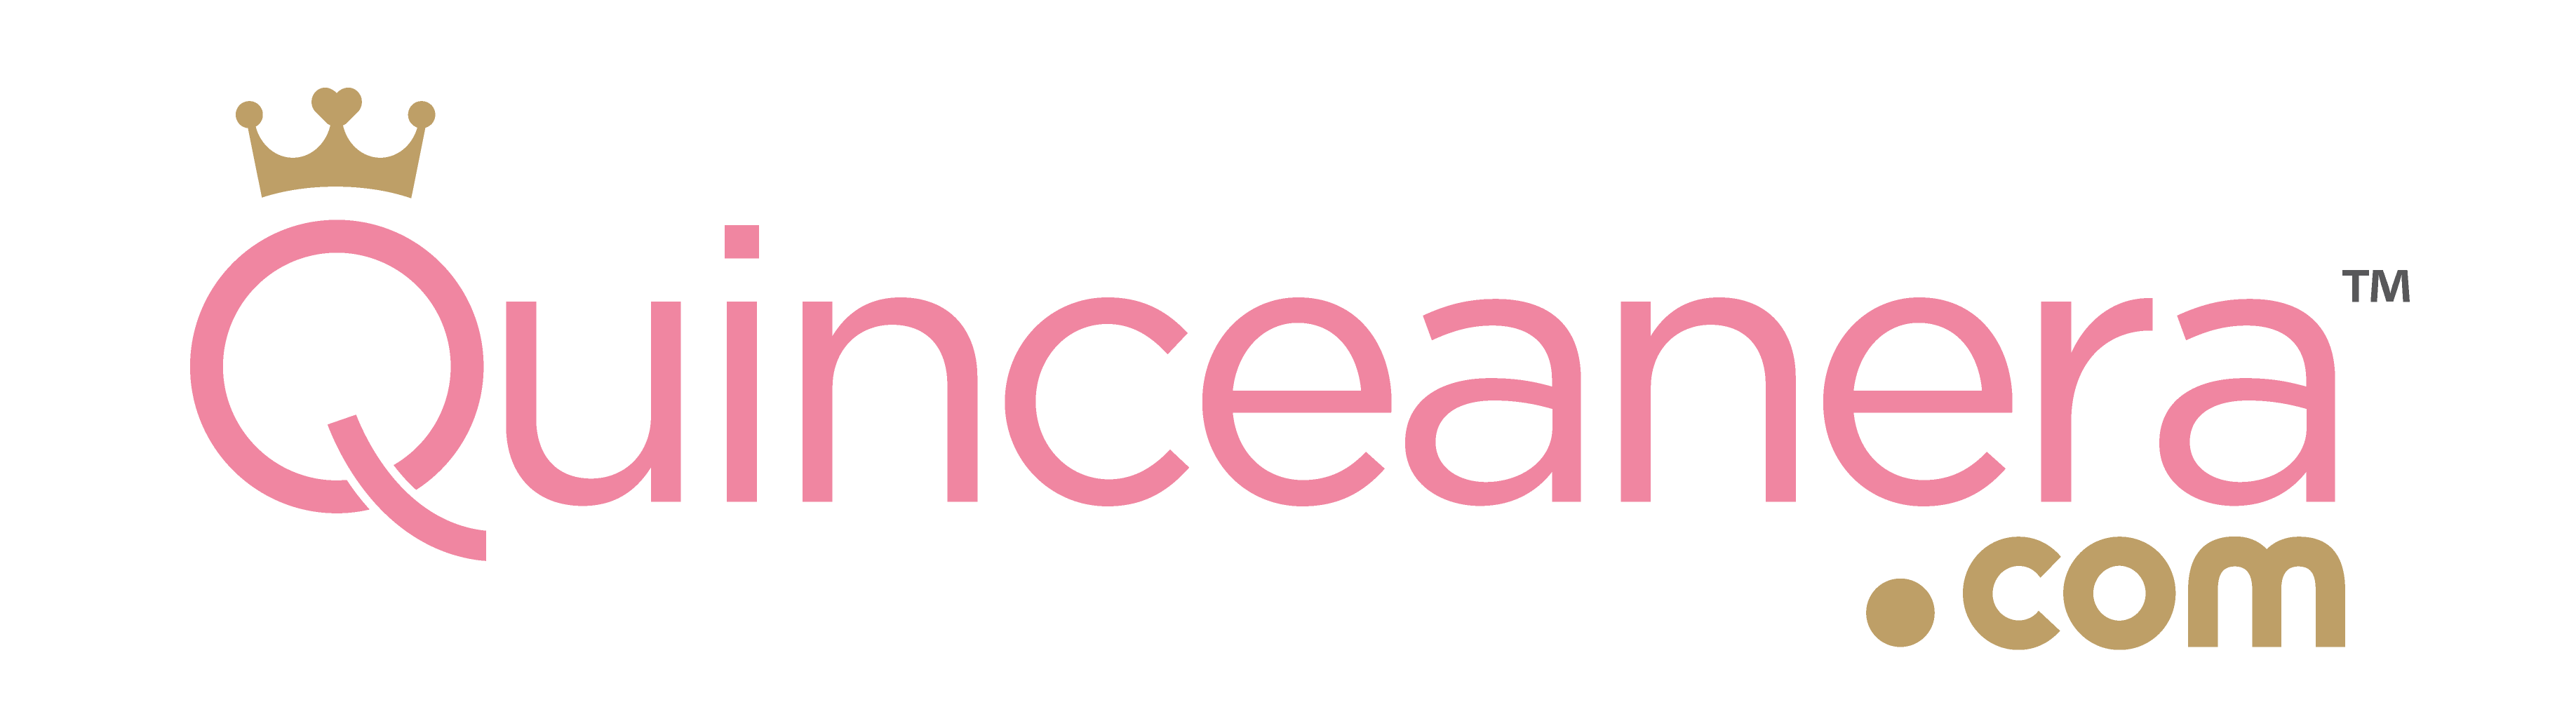 quinceanera website logo